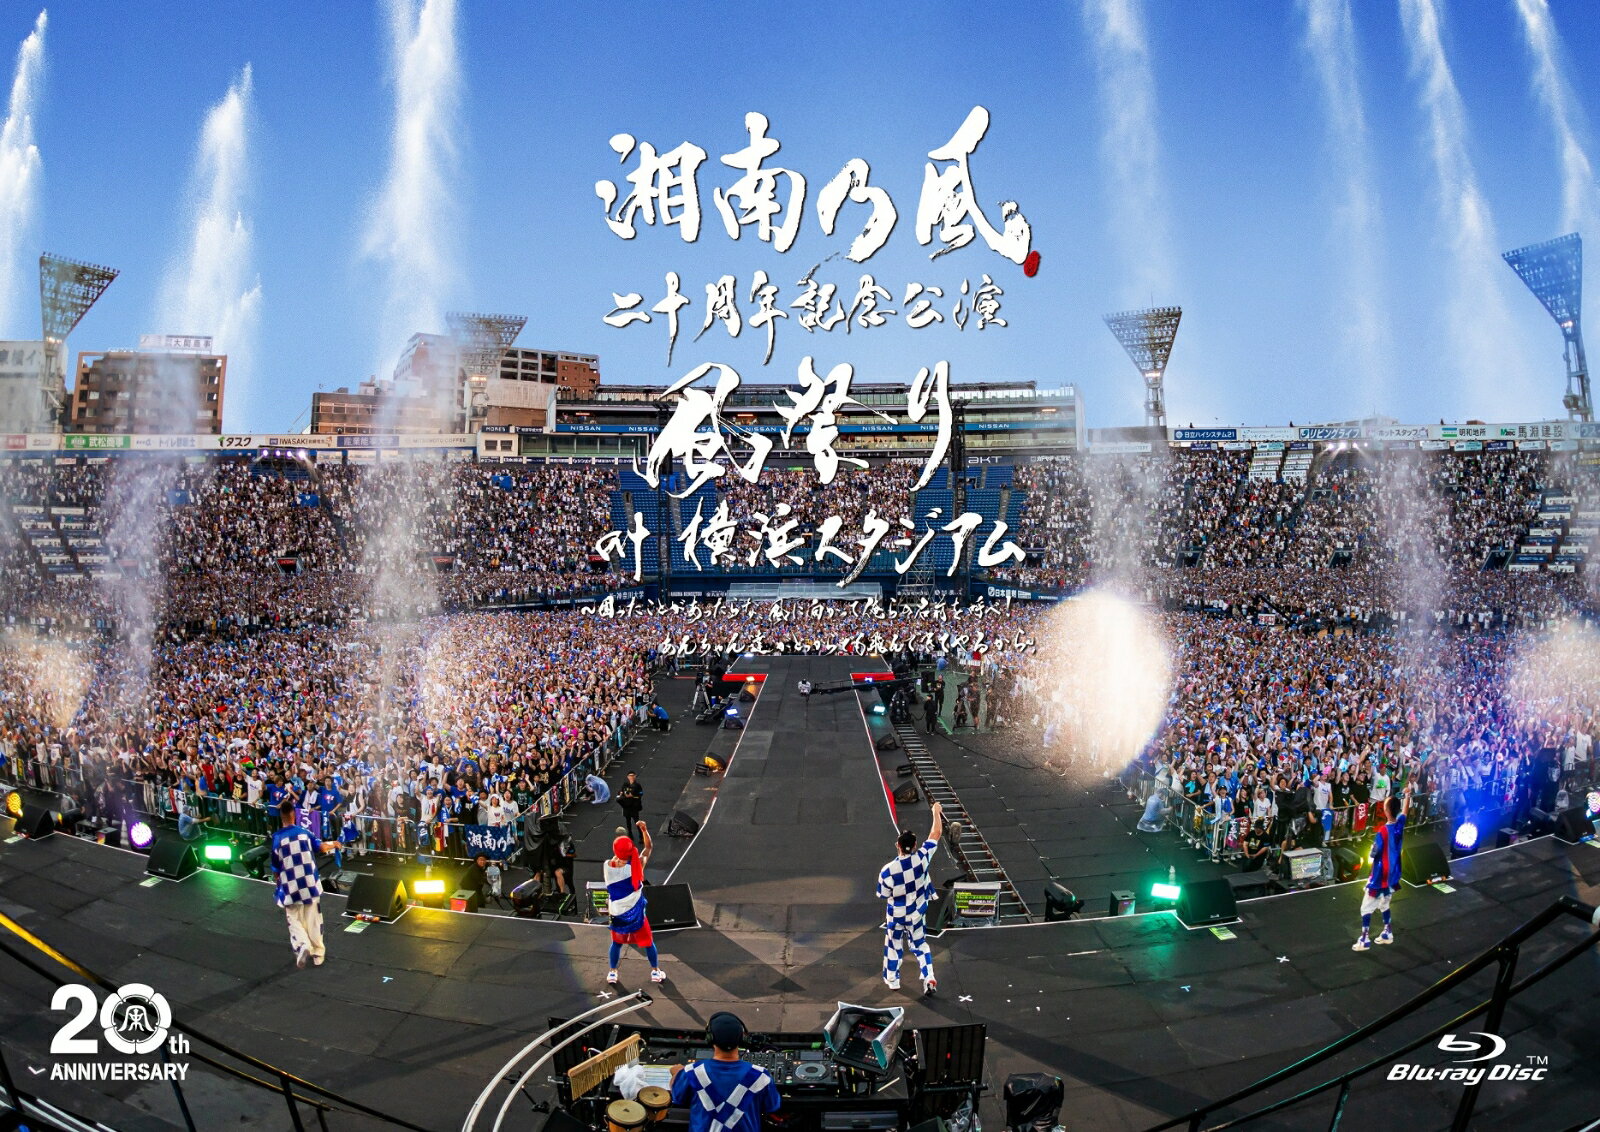 湘南乃風 二十周年記念公演 「風祭り at 横浜スタジアム」 ～困ったことがあったらな 風に向かって俺らの名前を呼べ！あんちゃん達がどっからでも飛んできてやるから～(通常盤Blu-ray) 【Blu-ray】 湘南乃風